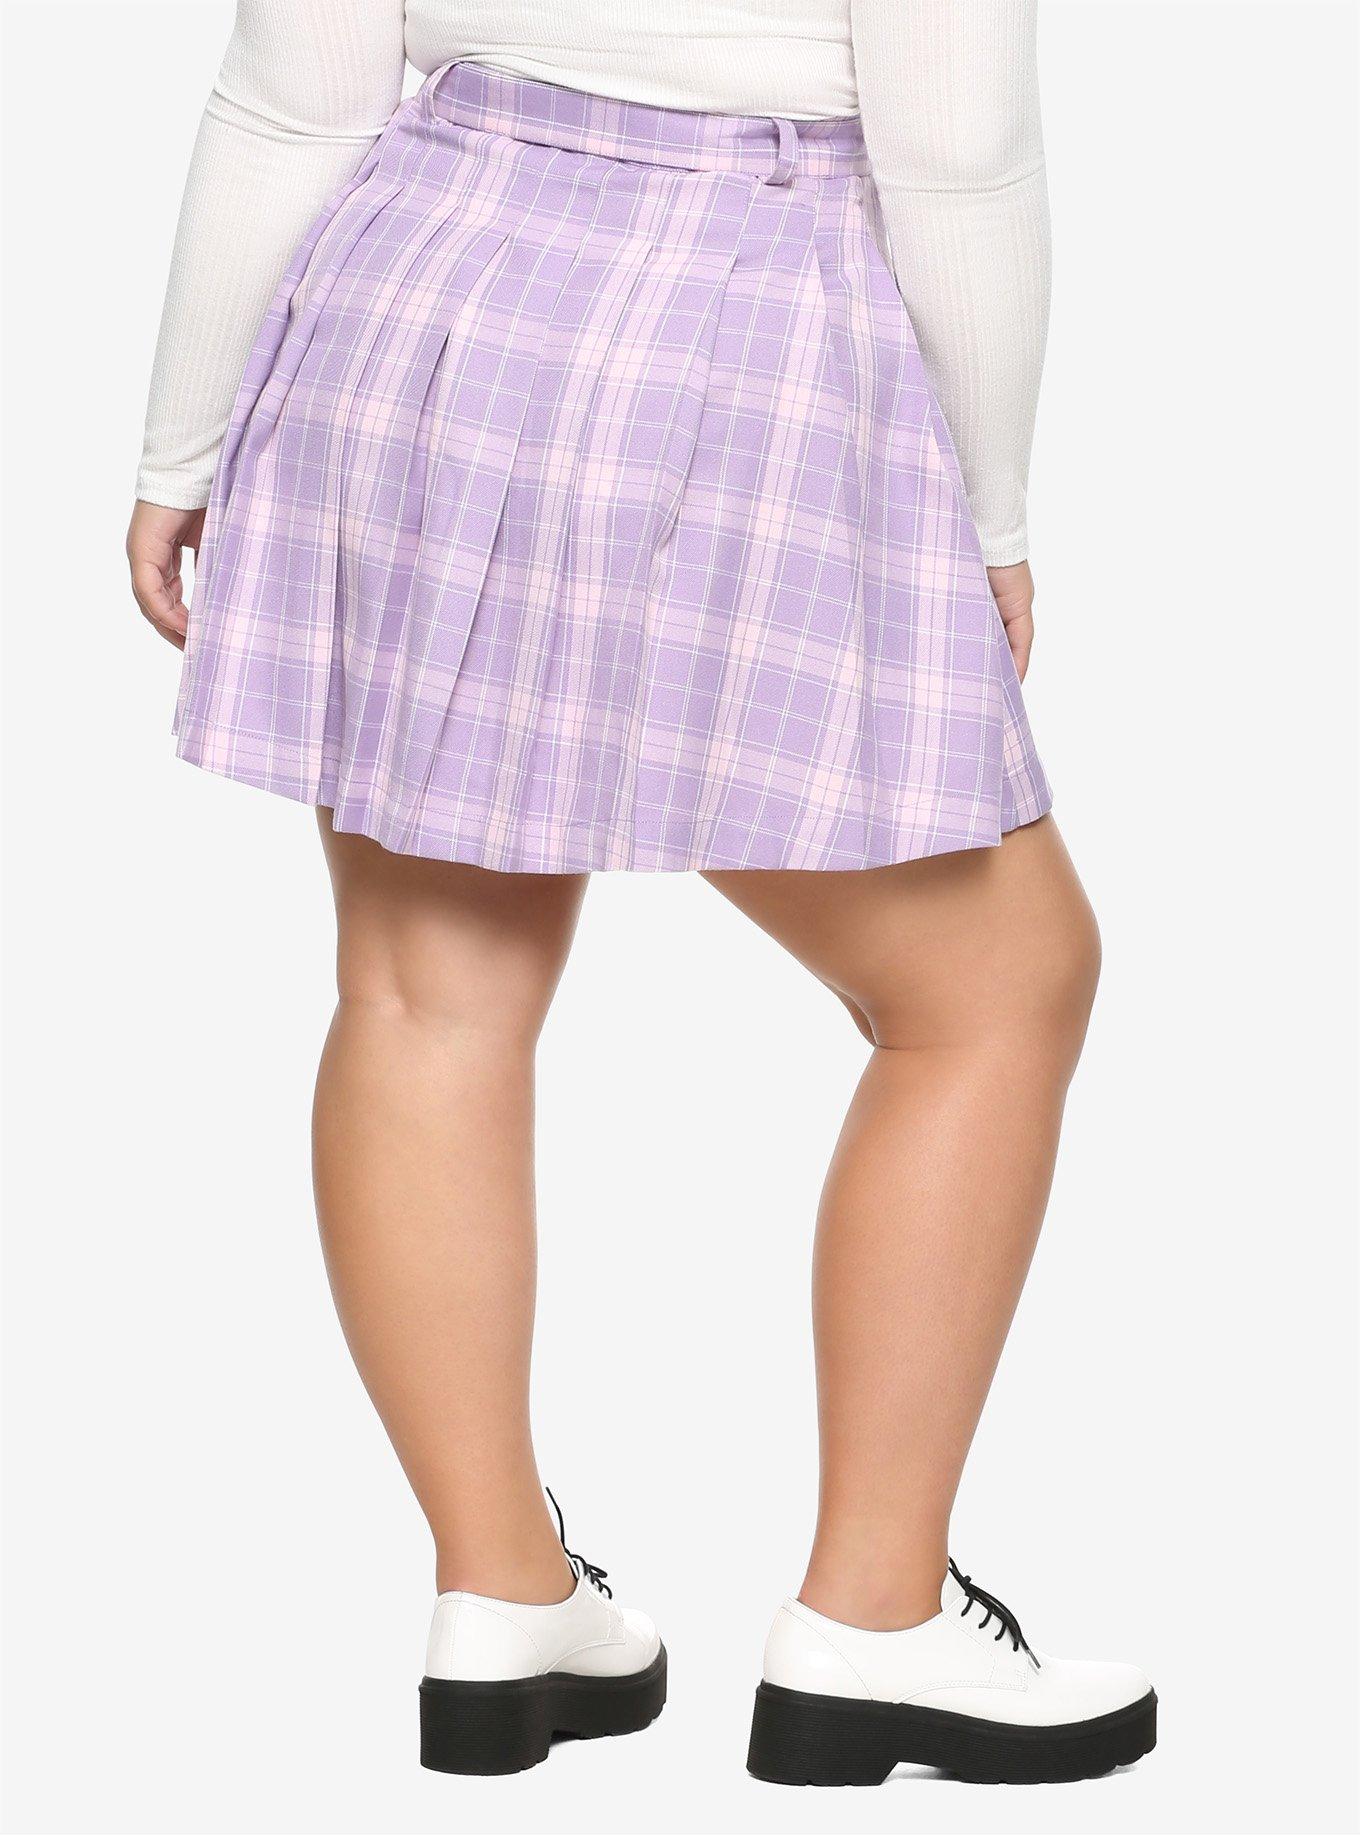 Pastel Purple Pleated & Belted Skirt Plus Size, PLAID - PURPLE, alternate